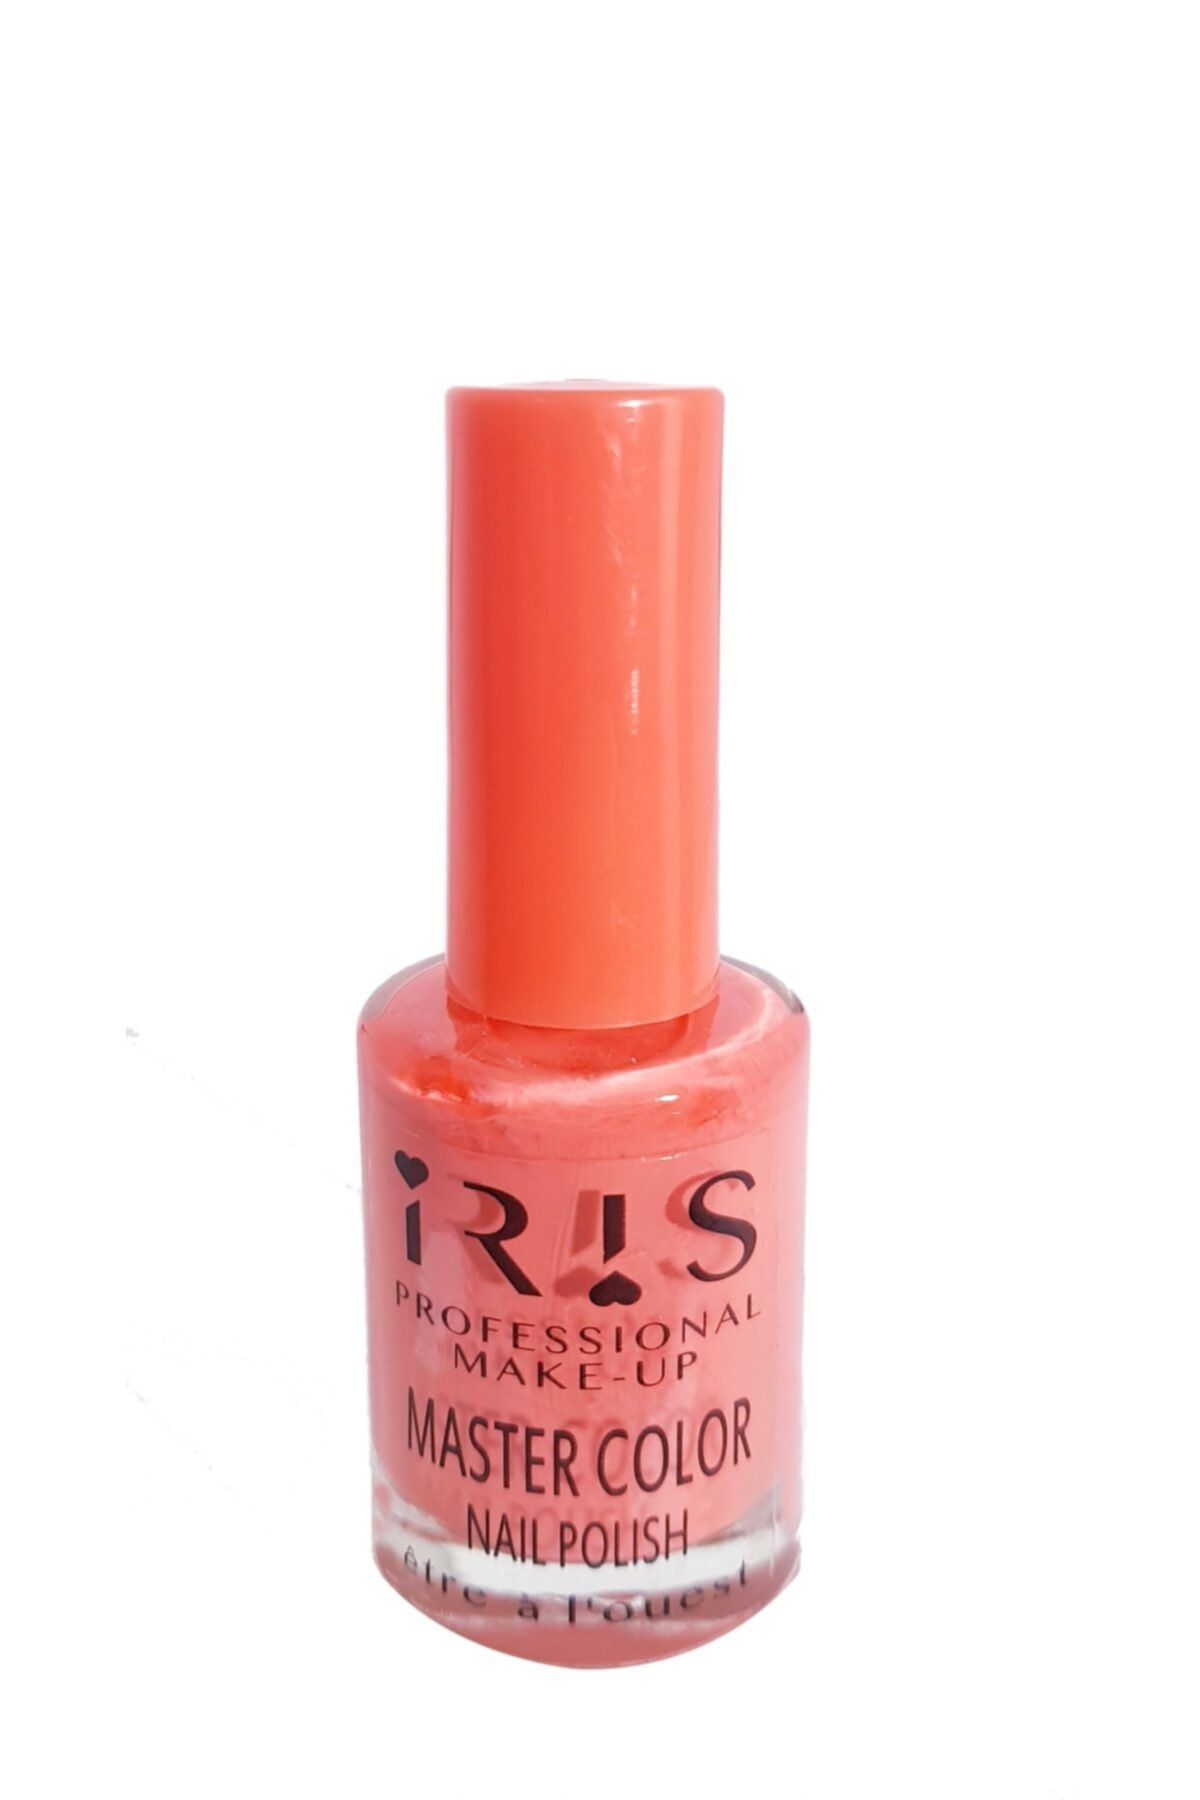 IRIS Master Color Oje 147